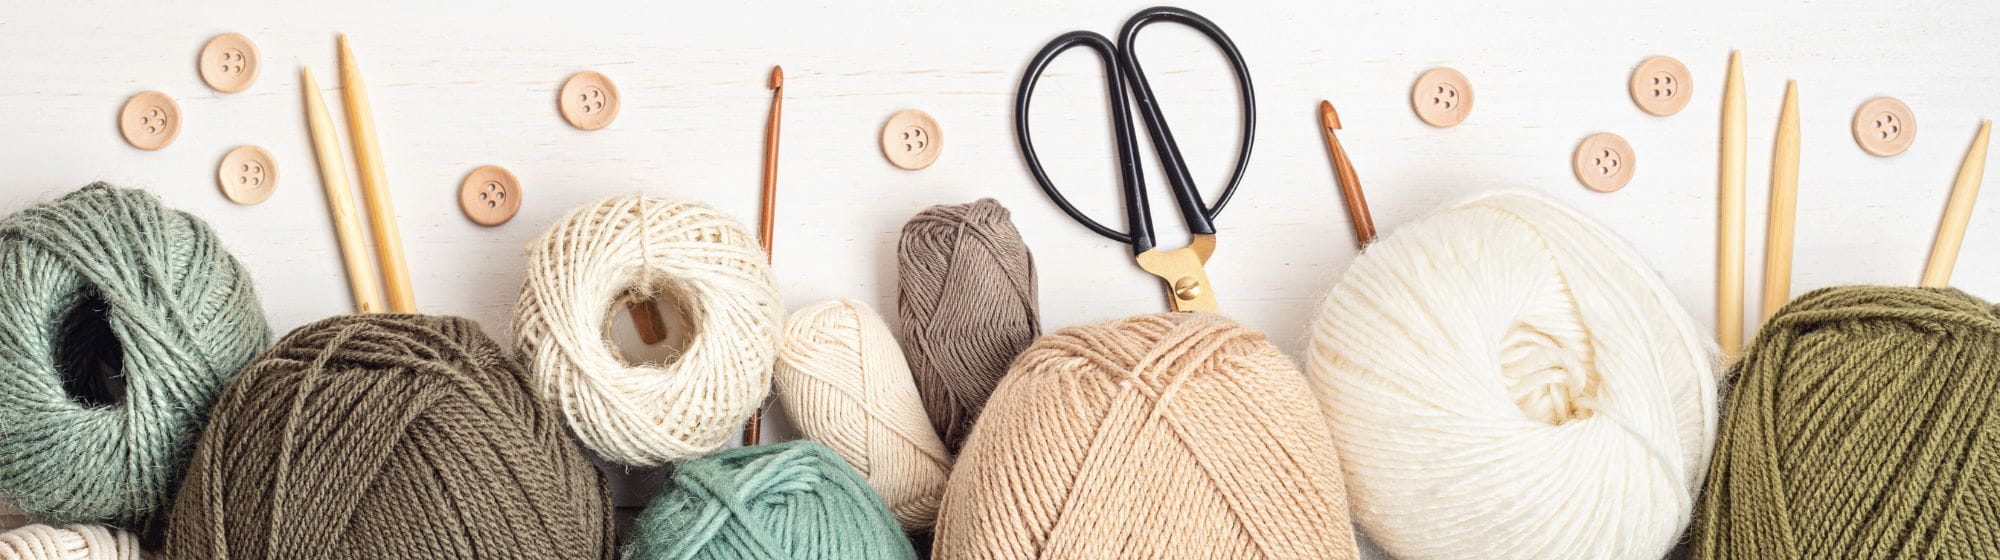 Pelotes de laine, boutons de couture et aiguilles à tricoter